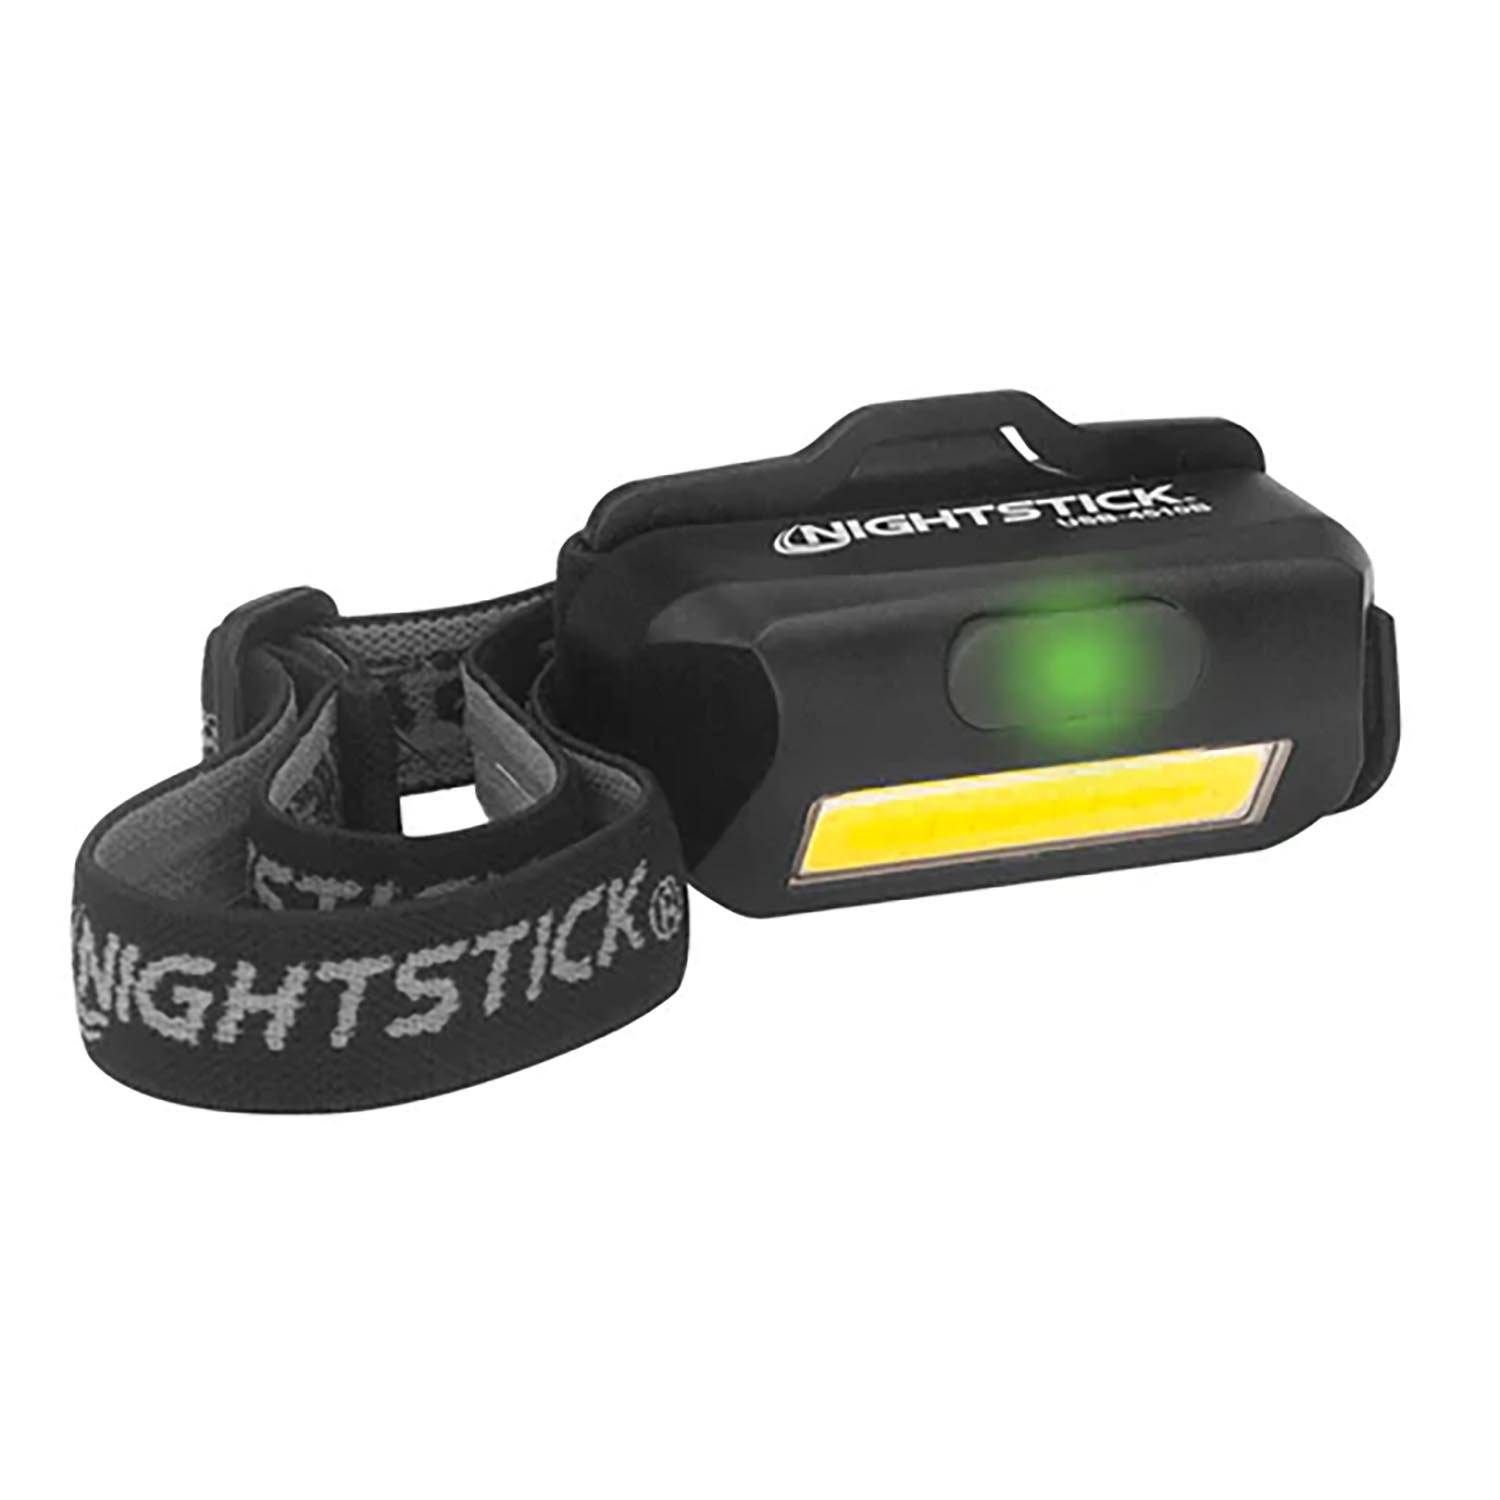 Nightstick USB-4510B Multi-Flood Headlamp